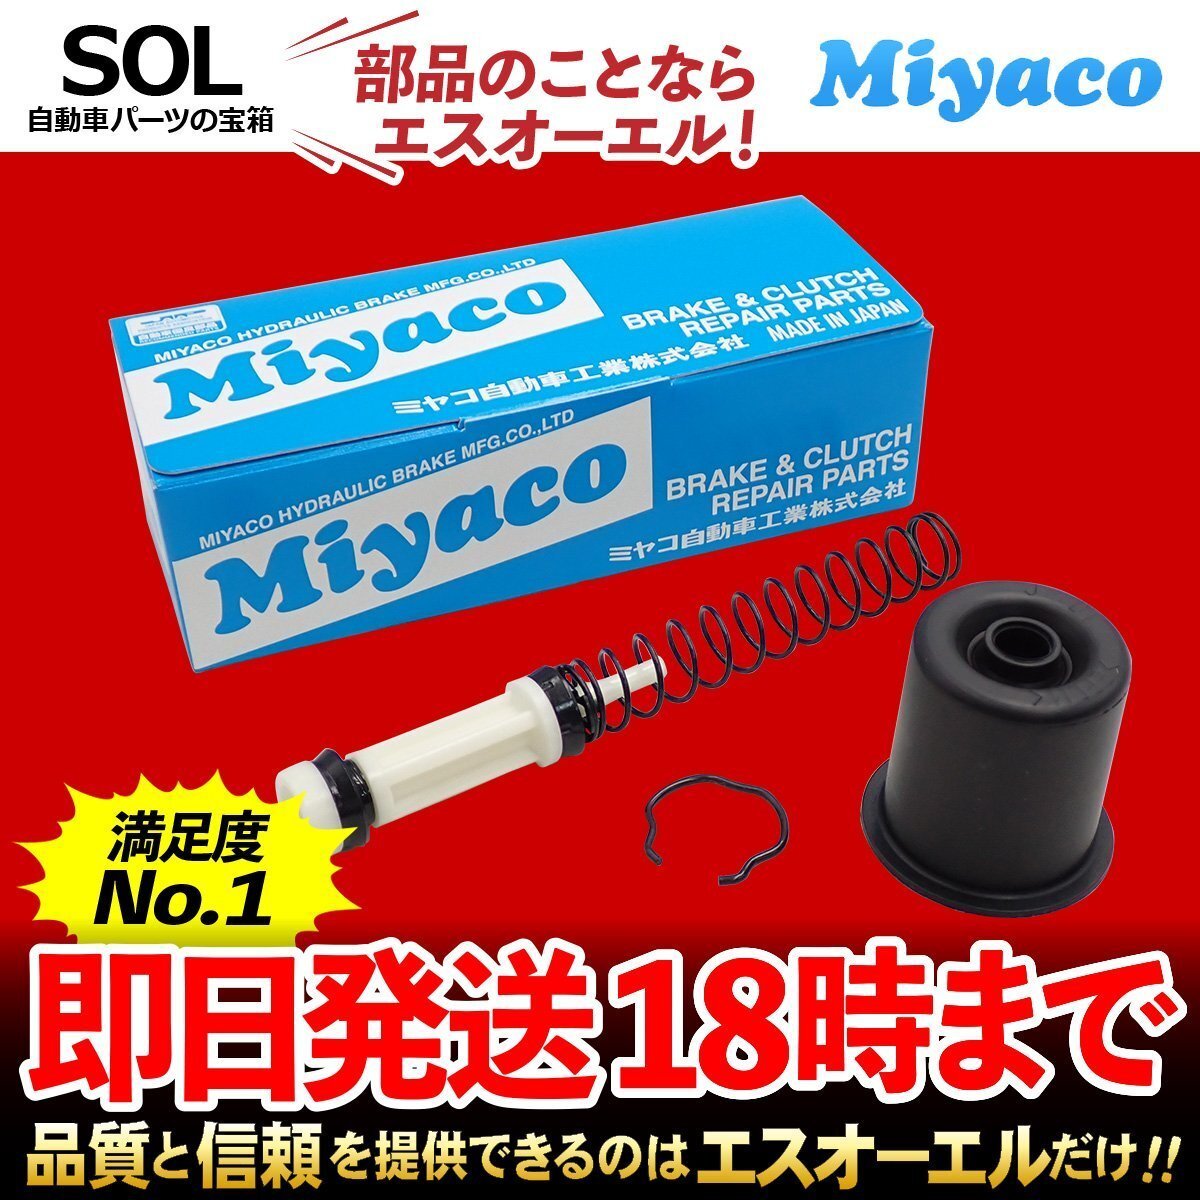  Lucino Lucino Wagon Miyacomiyako clutch master repair kit MK-N220miyako automobile JN15 shipping deadline 18 hour 